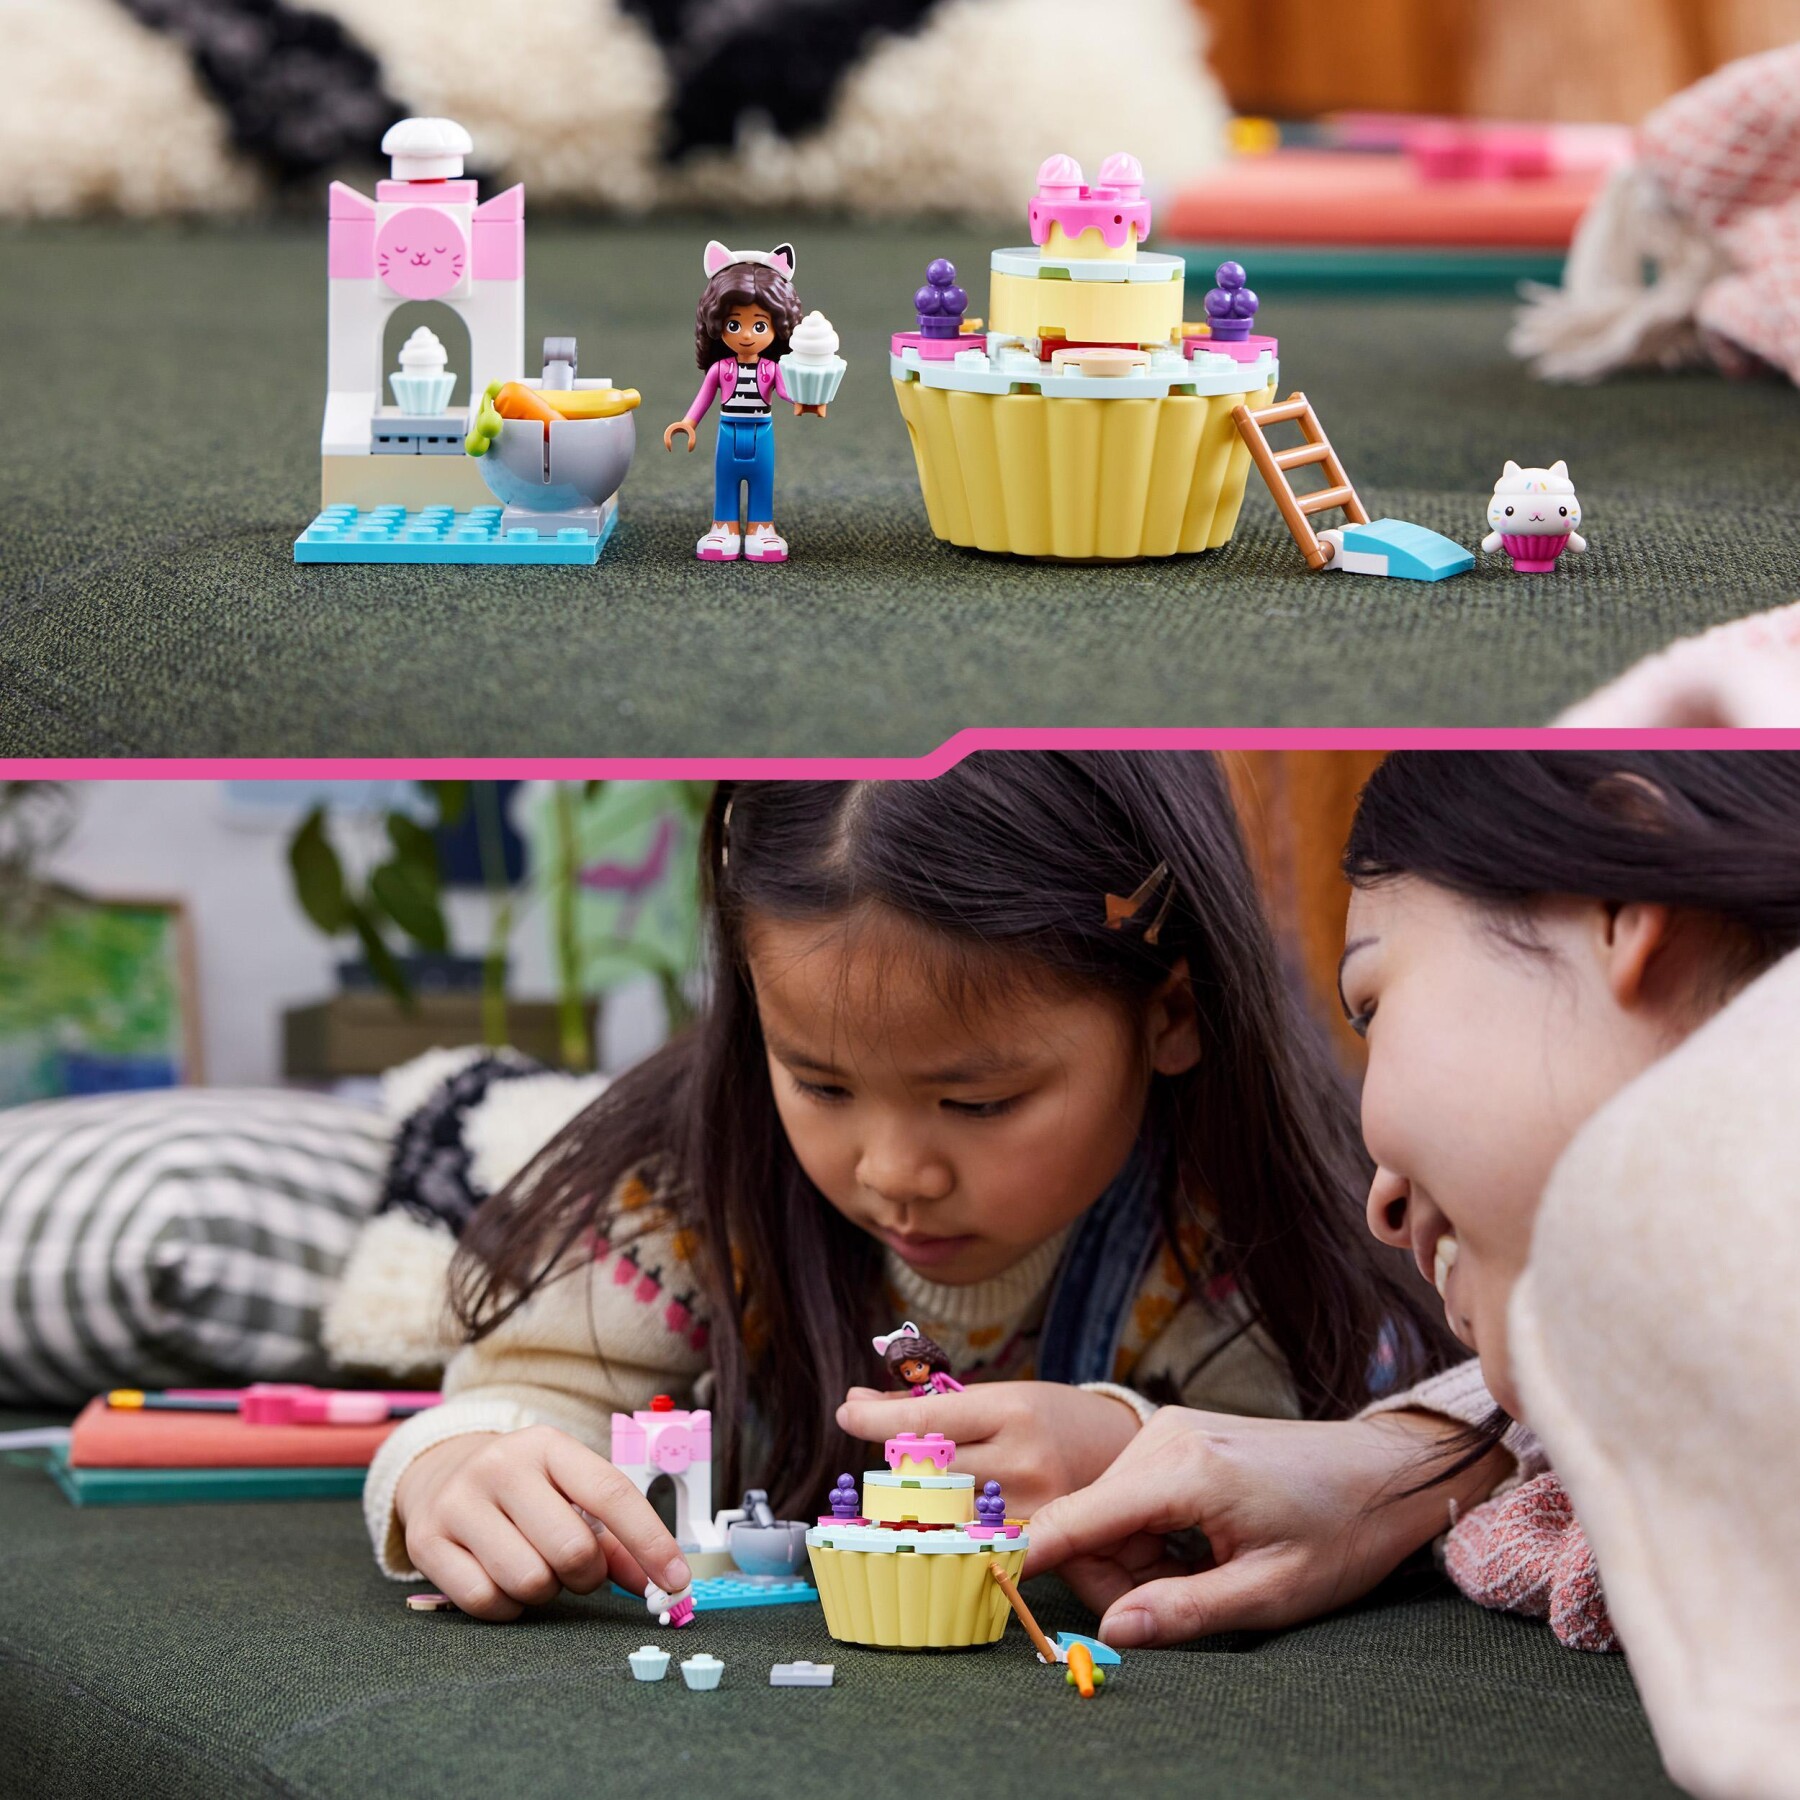 Lego la casa delle bambole di gabby 10785 divertimento in cucina con dolcetto, giocattolo con cupcake, giochi bambini 4+ anni - GABBY'S DOLLHOUSE, Lego